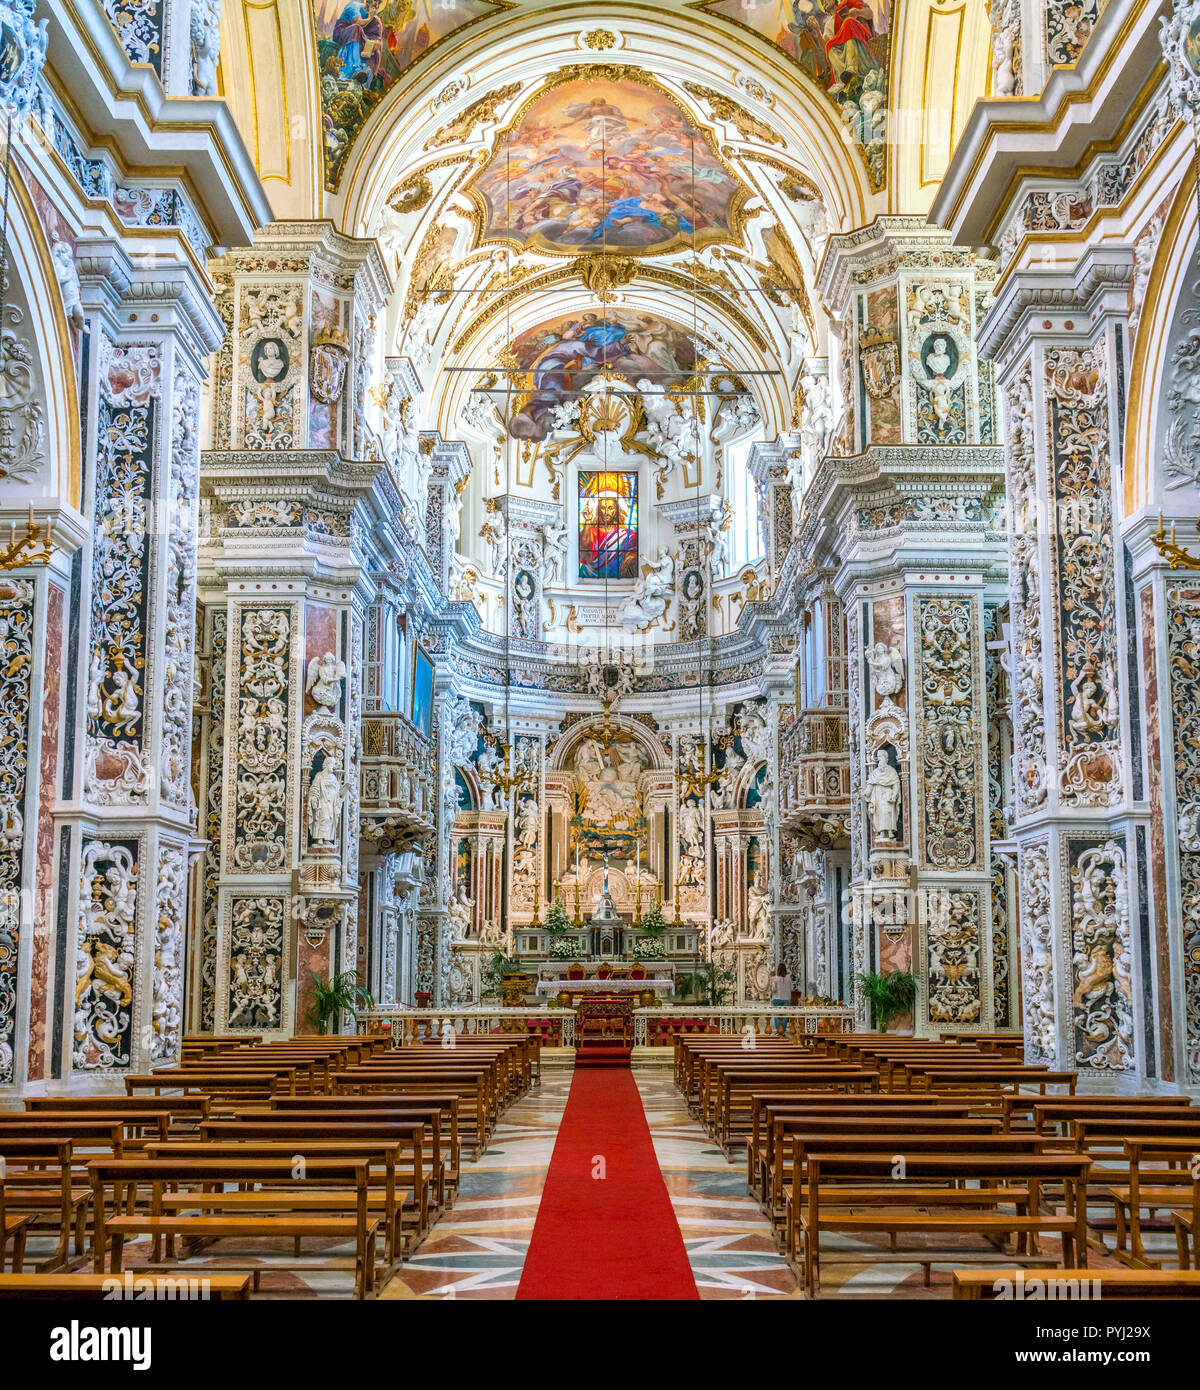 Interno in vista della barocca chiesa del Gesù a Palermo. Sicilia, Italia. Foto Stock